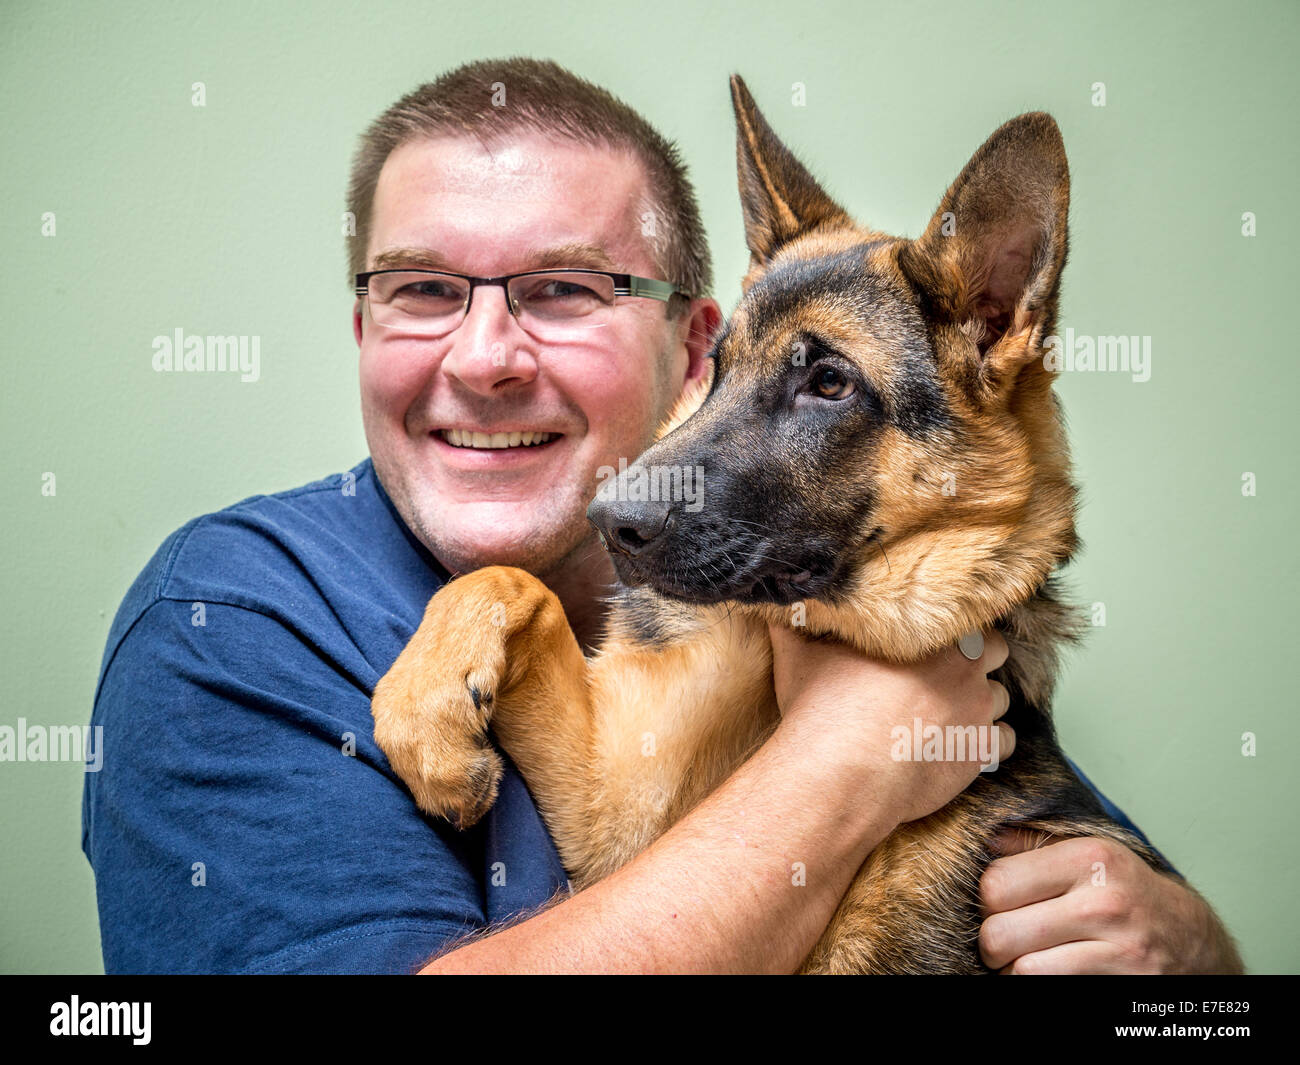 Heureux Jeune homme posant avec son animal berger allemand Banque D'Images